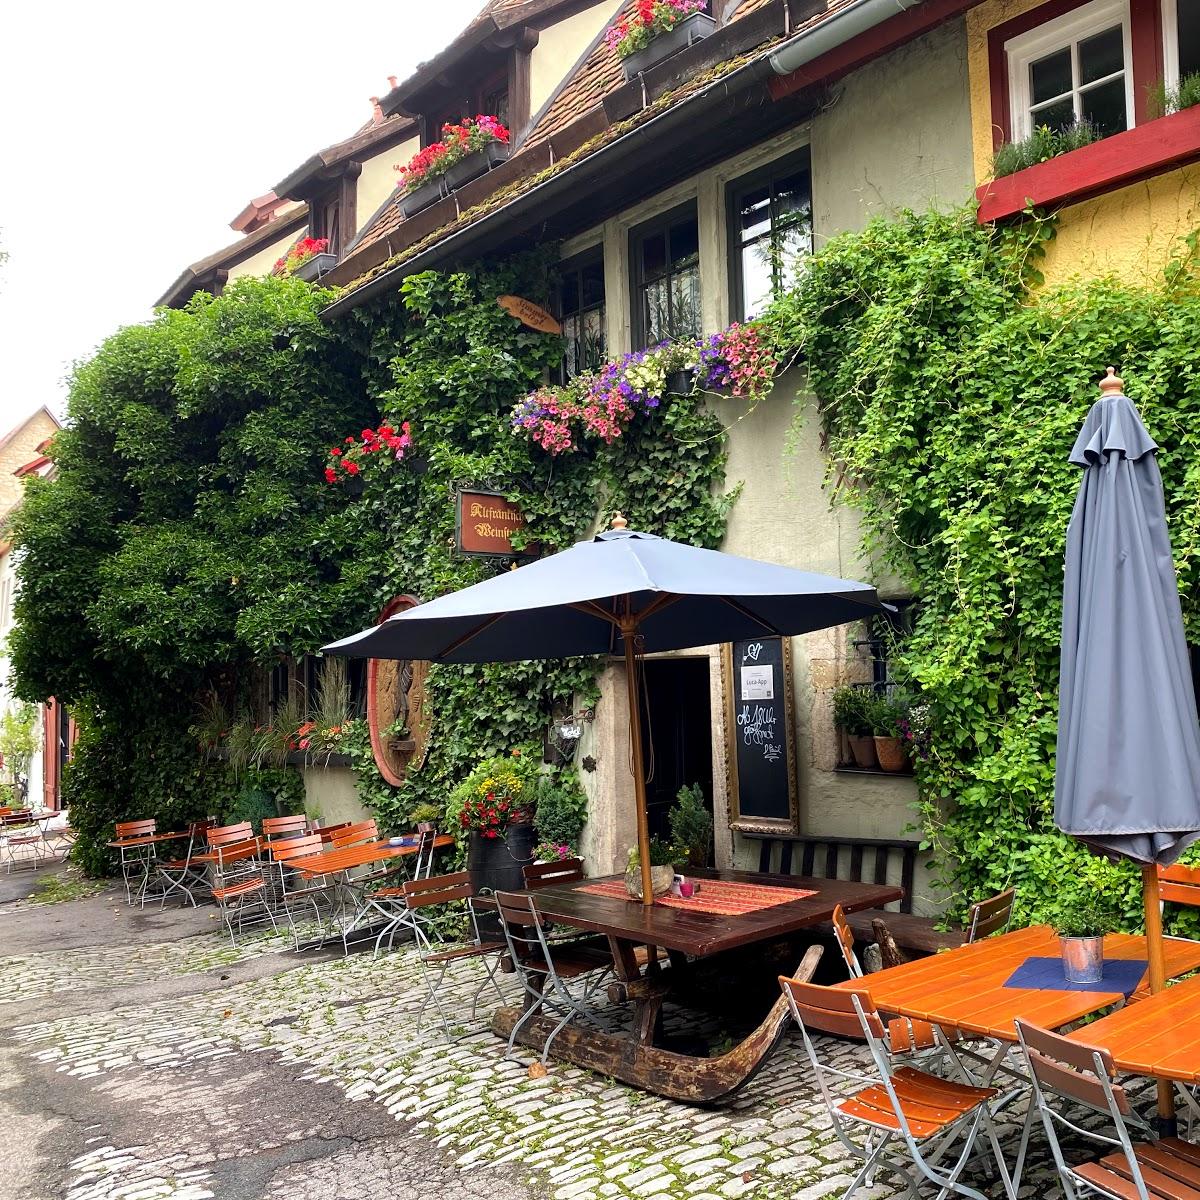 Restaurant "Altfränkische Weinstube Hotel" in  Tauber